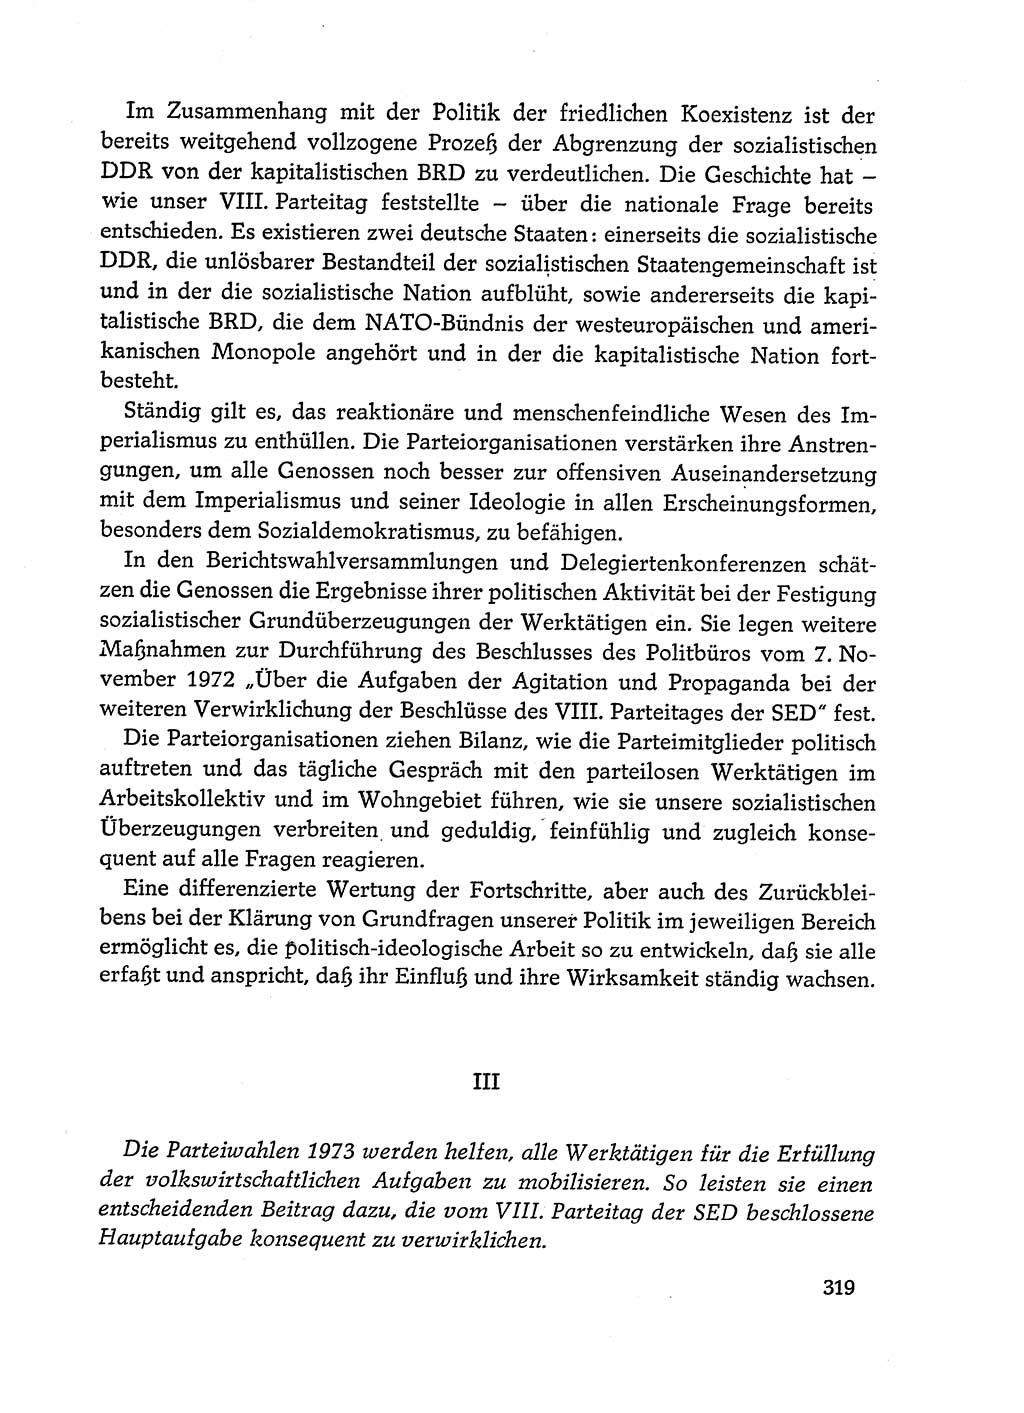 Dokumente der Sozialistischen Einheitspartei Deutschlands (SED) [Deutsche Demokratische Republik (DDR)] 1972-1973, Seite 319 (Dok. SED DDR 1972-1973, S. 319)